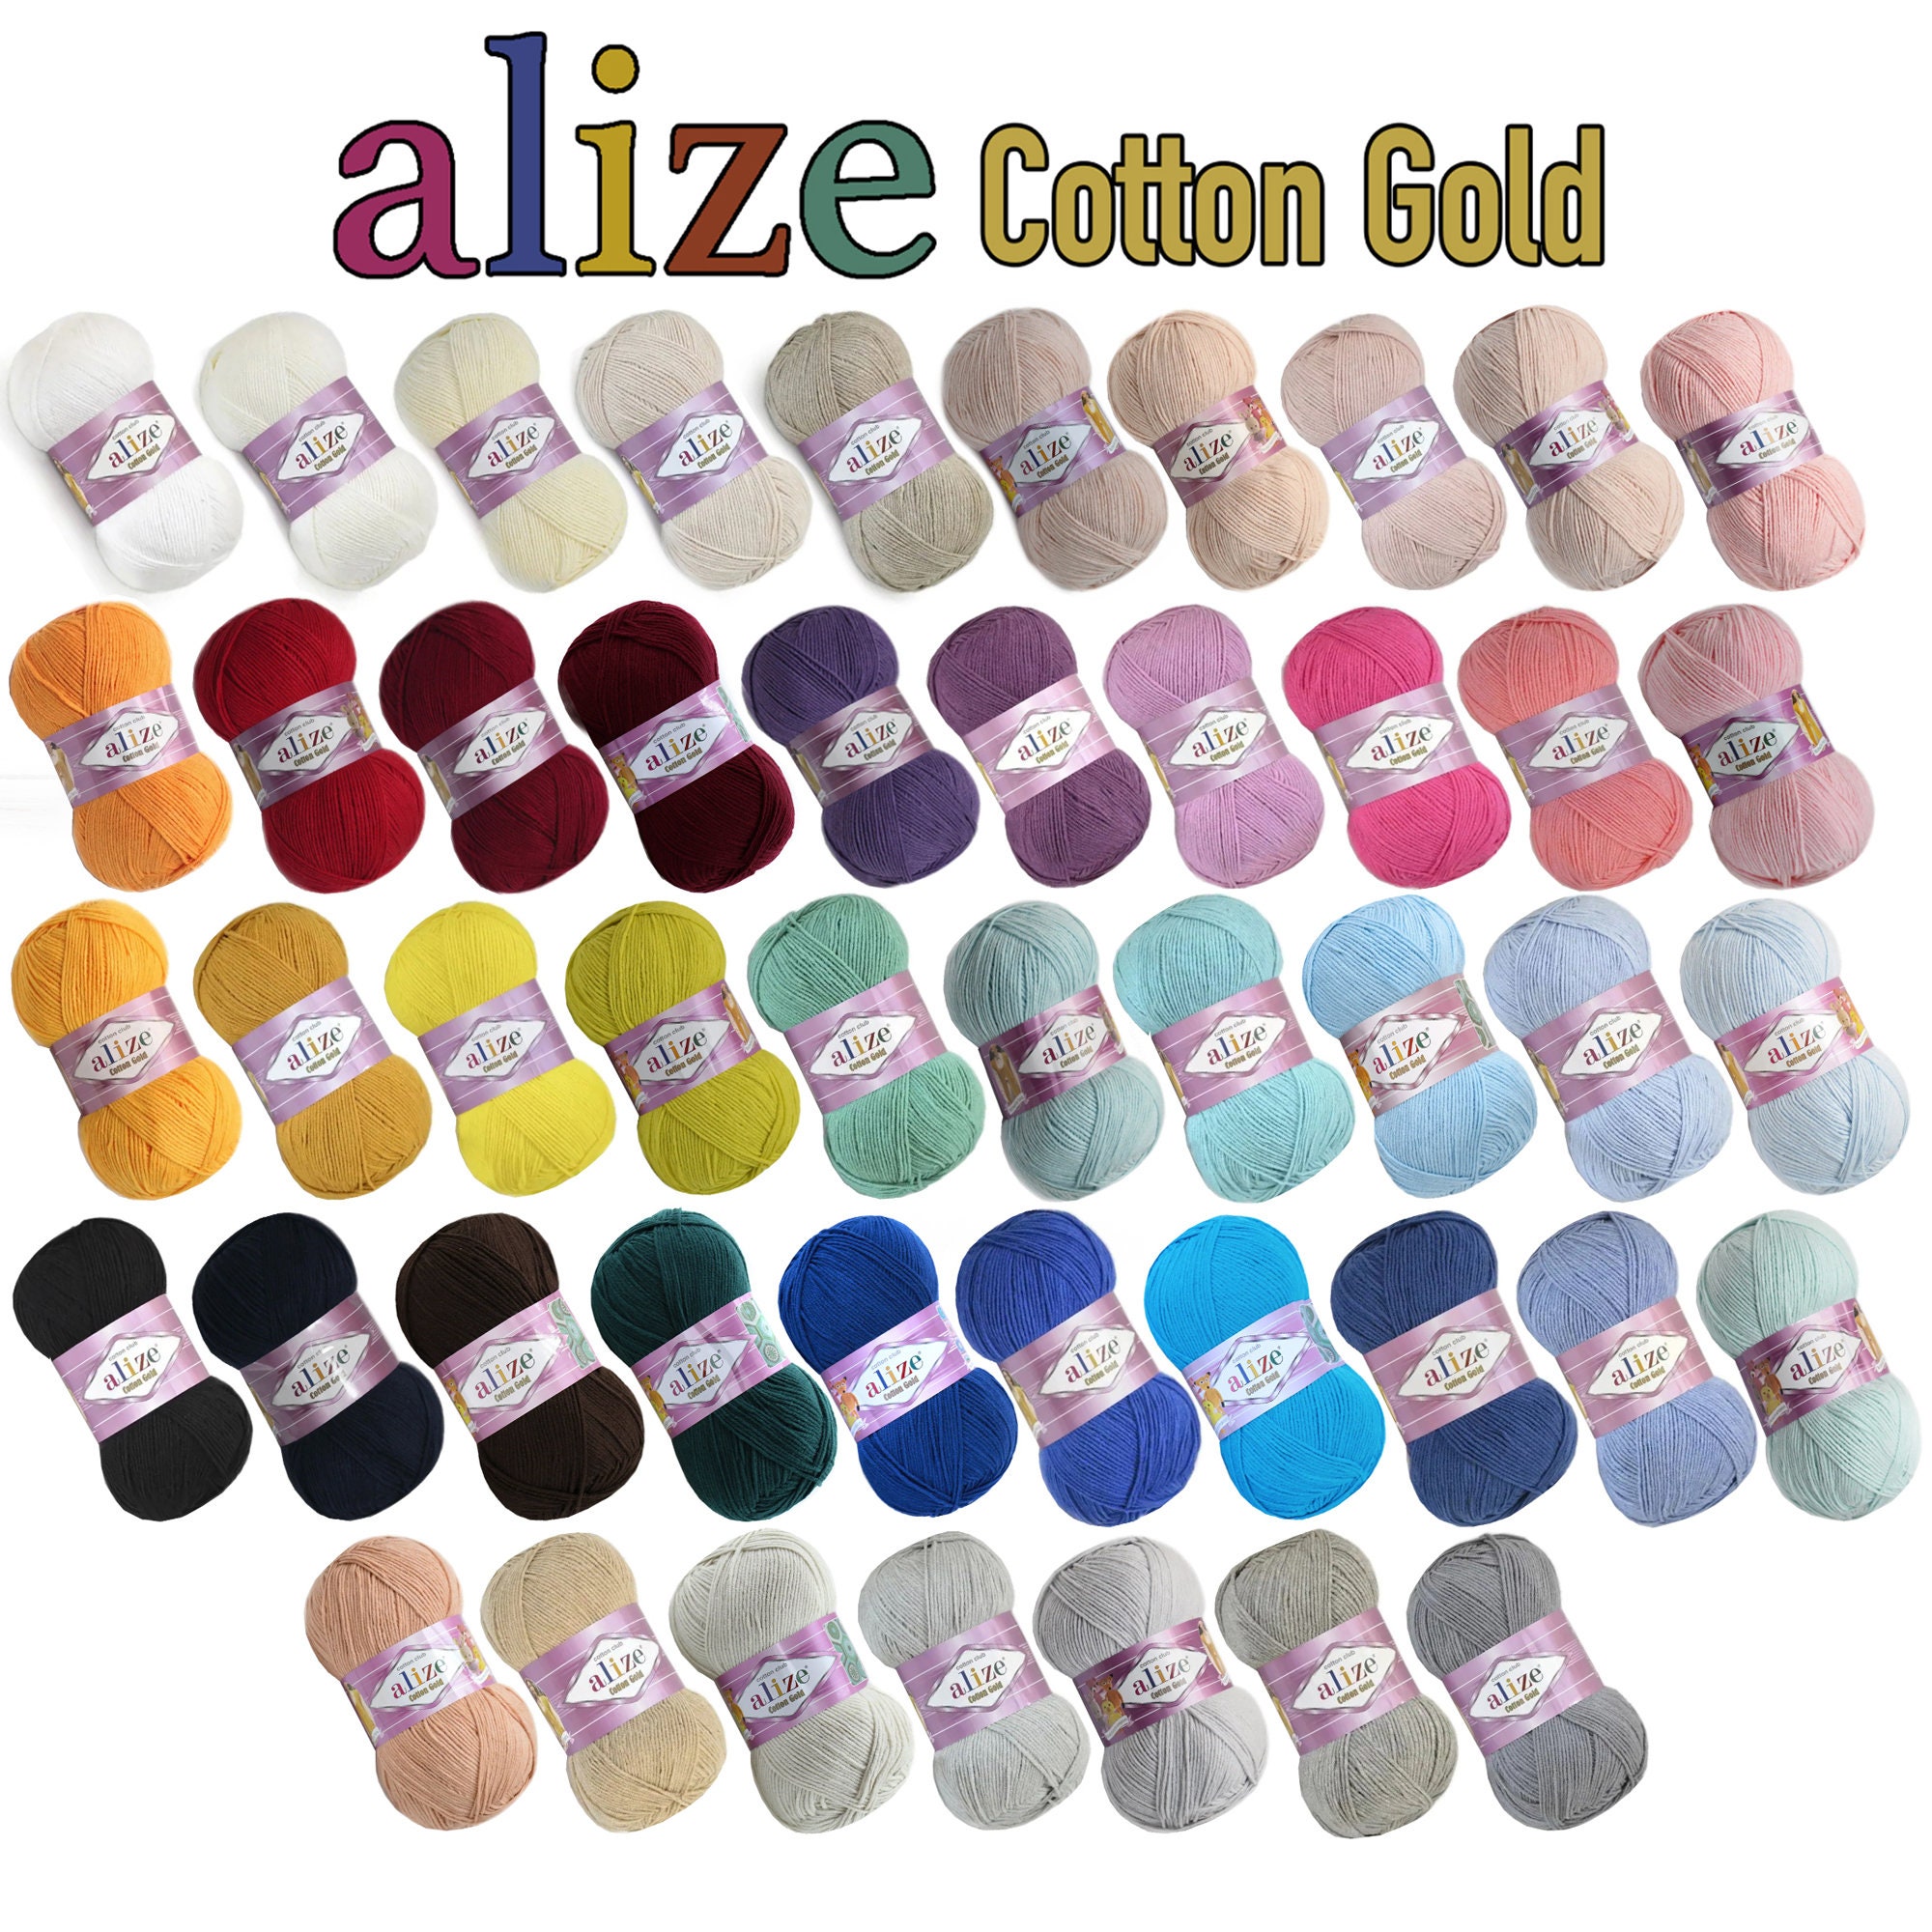 Alize Cotton Gold,summer Yarn, Hand Knitting Yarn, Baby Cotton